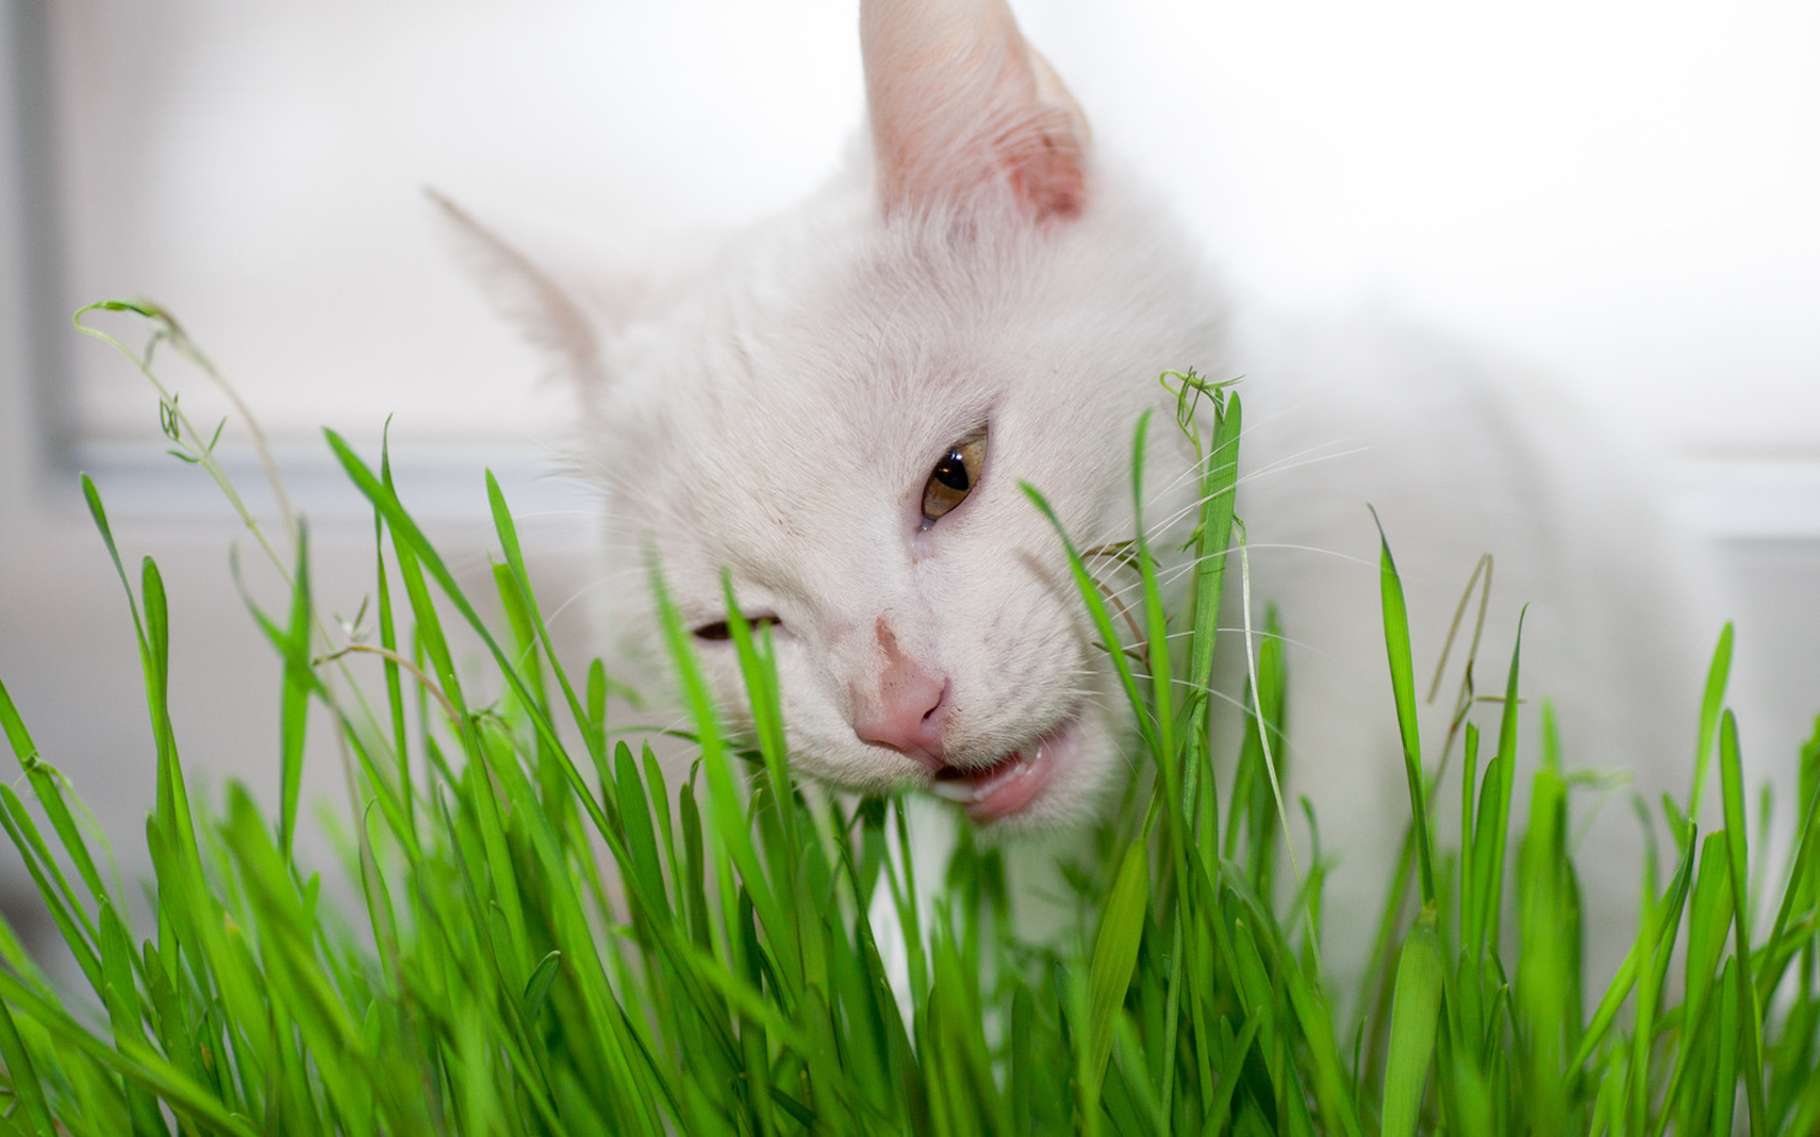 Les chats mangent essentiellement de l’herbe pour vomir les poils qu’ils avalent en faisant leurs toilettes. © mironovm, Fotolia